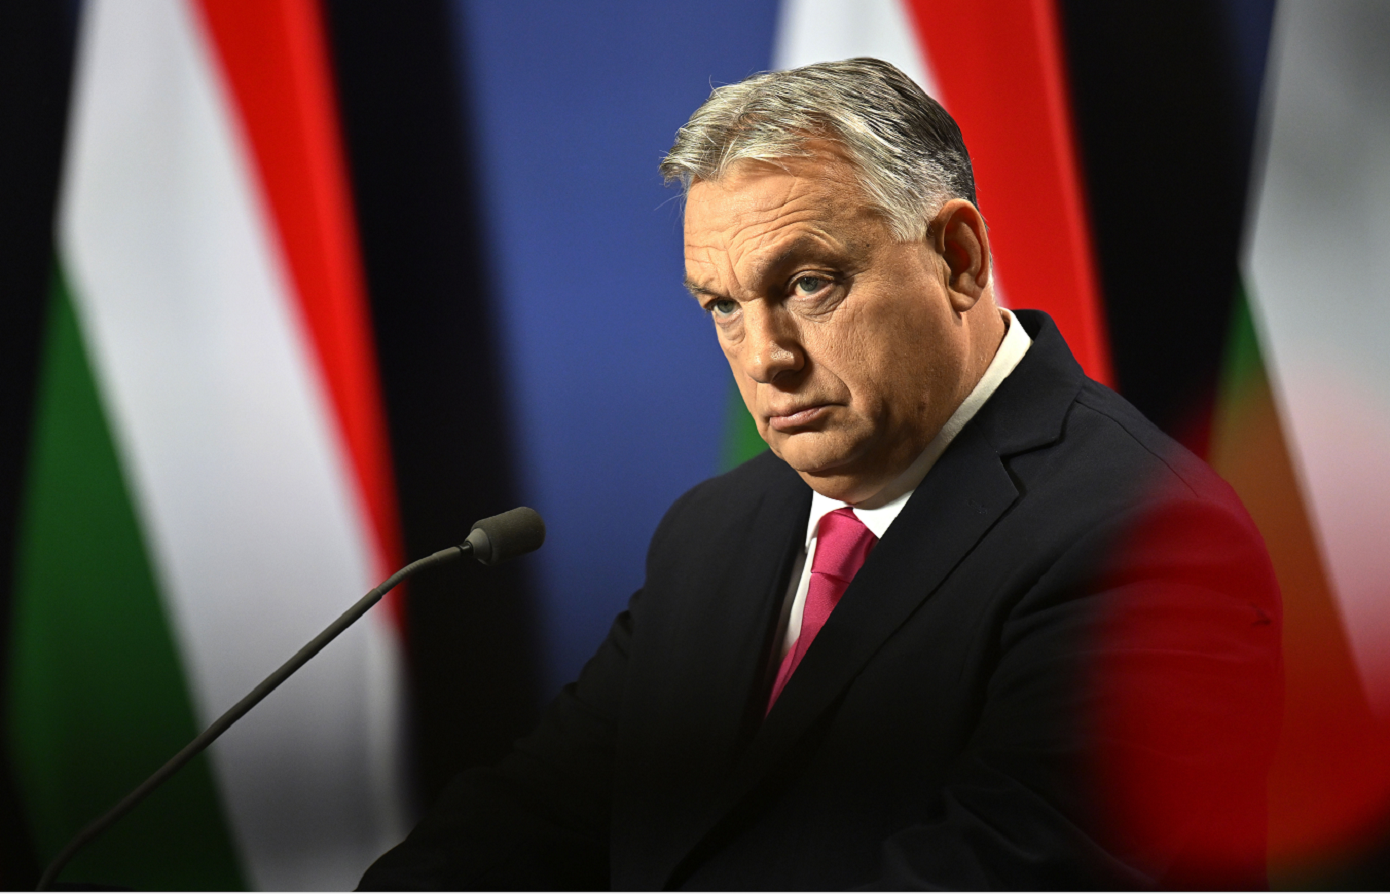 Ο νόμος για «προστασία της εθνικής κυριαρχίας» της Ουγγαρίας απειλεί τον ελεύθερο διάλογο, λέει επιτροπή για τα ανθρώπινα δικαιώματα